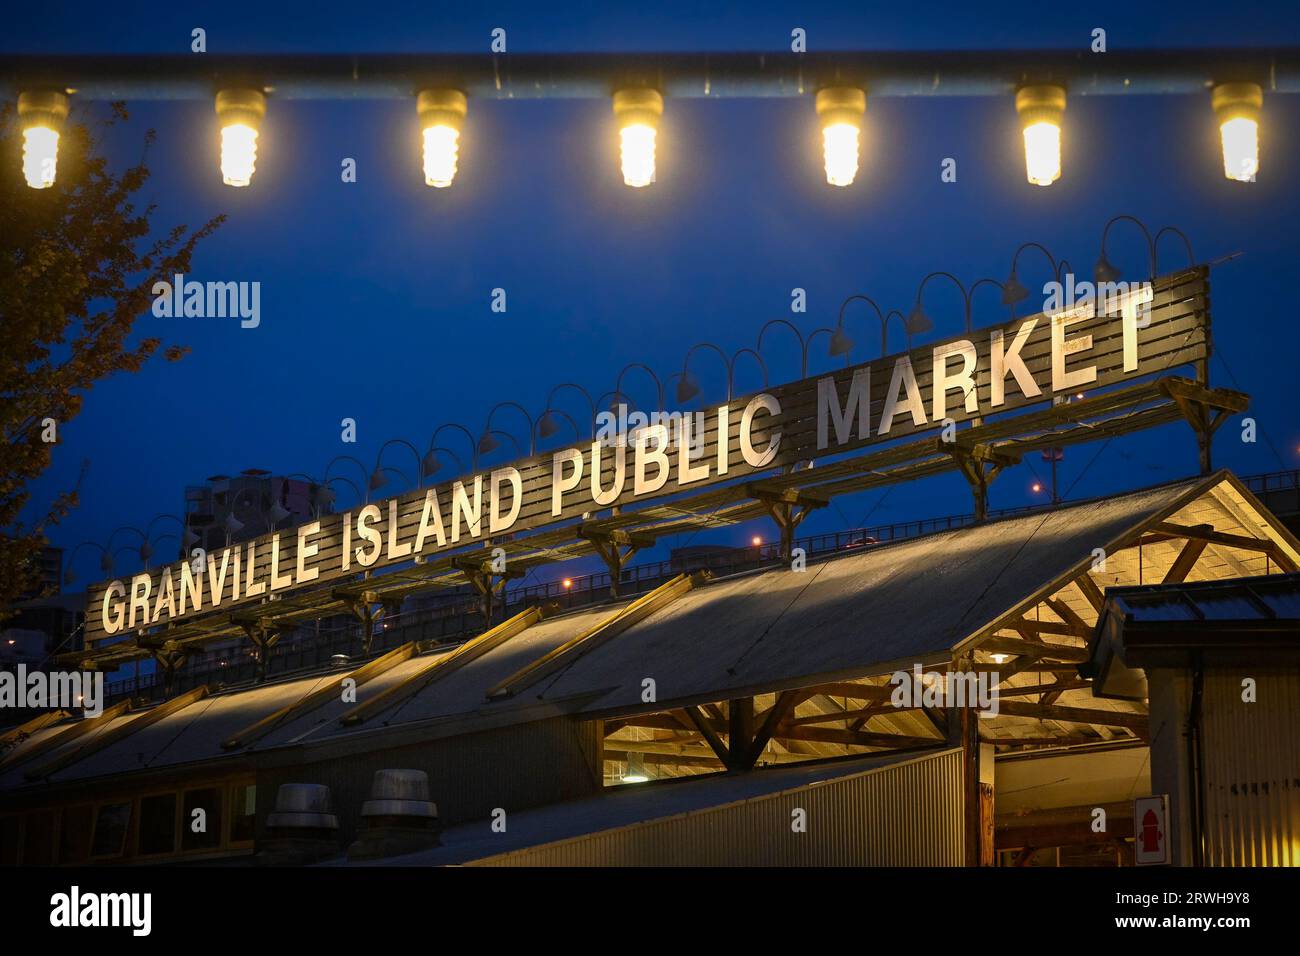 Granville Island Public Market sign, Granville Island, Vancouver, British Columbia,  Canada Stock Photo